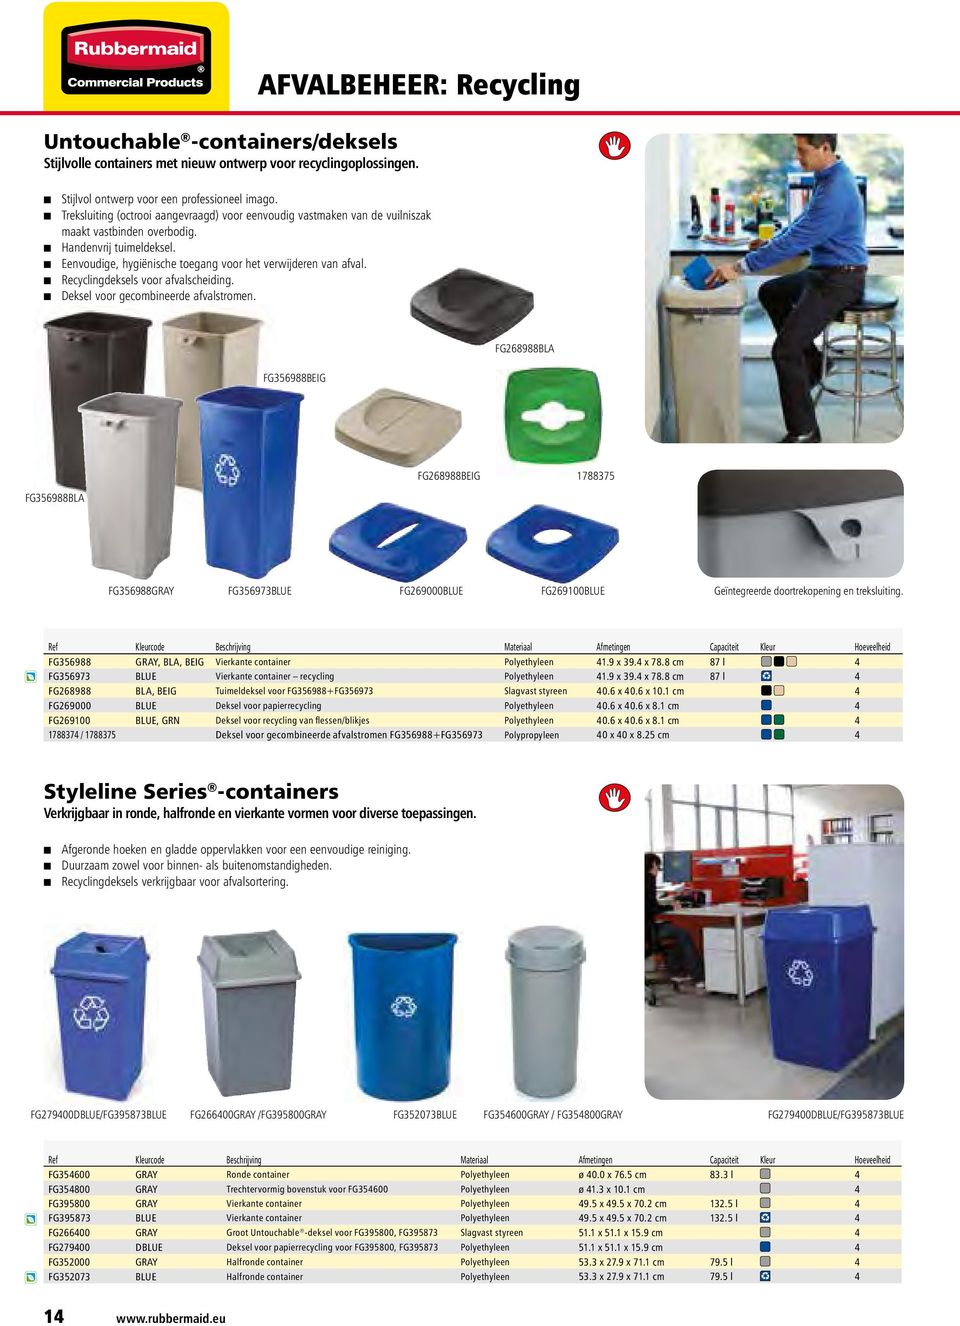 Recyclingdeksels voor afvalscheiding. Deksel voor gecombineerde afvalstromen.